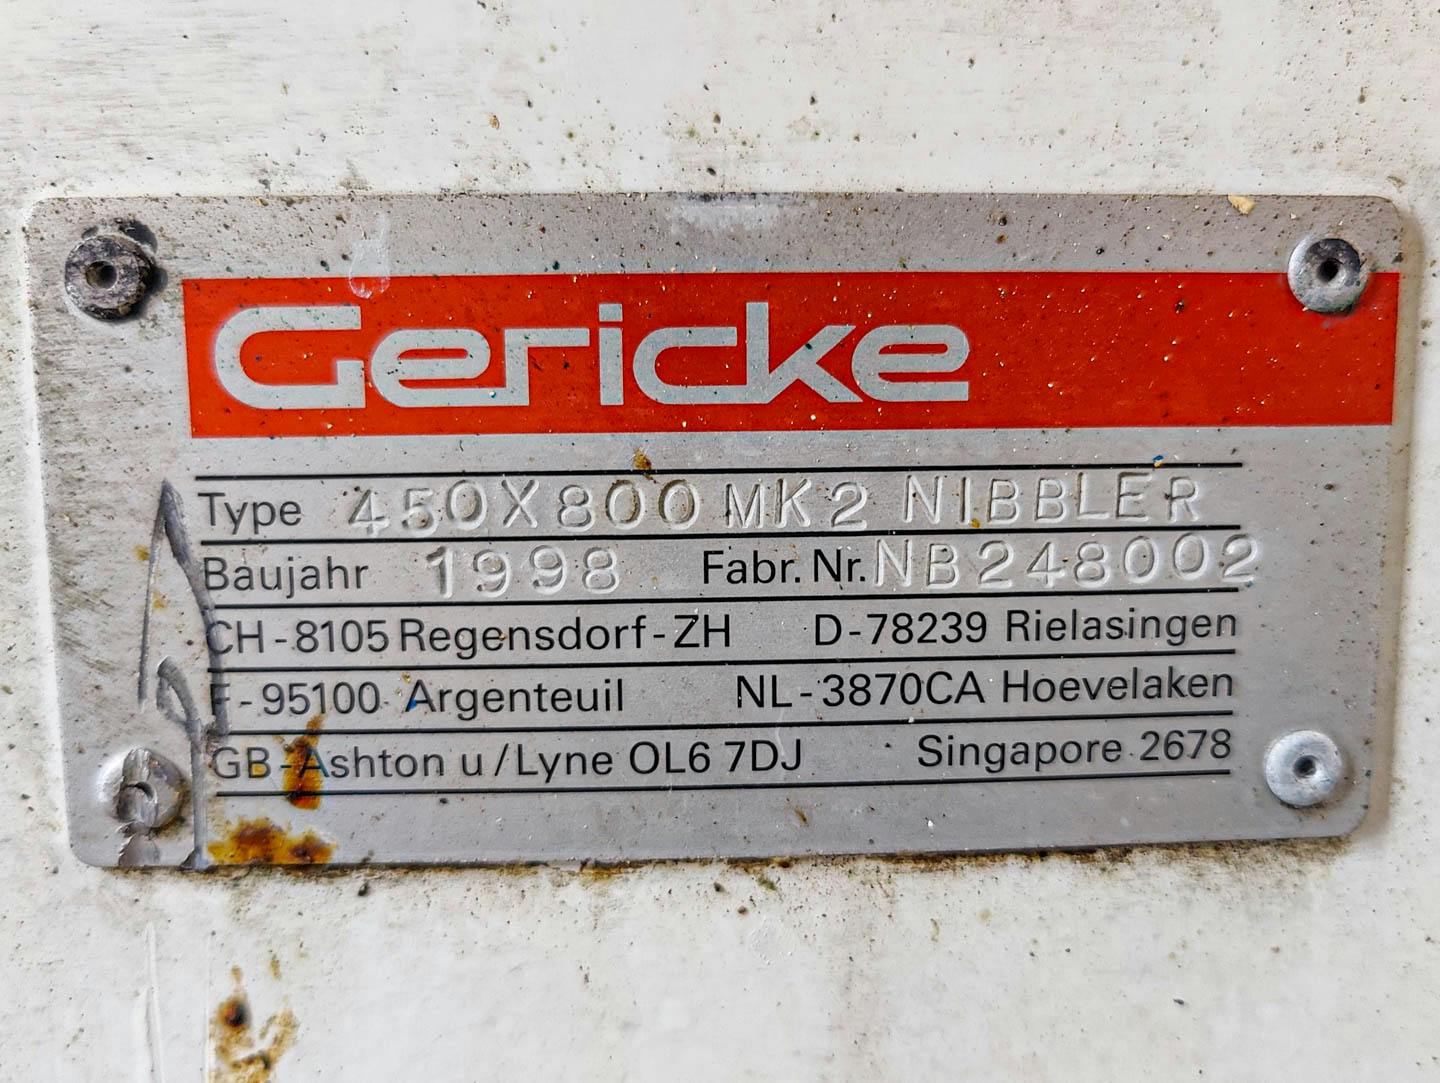 Gericke 450x800 MK2 NIBBLER - Granuliersieb - image 11